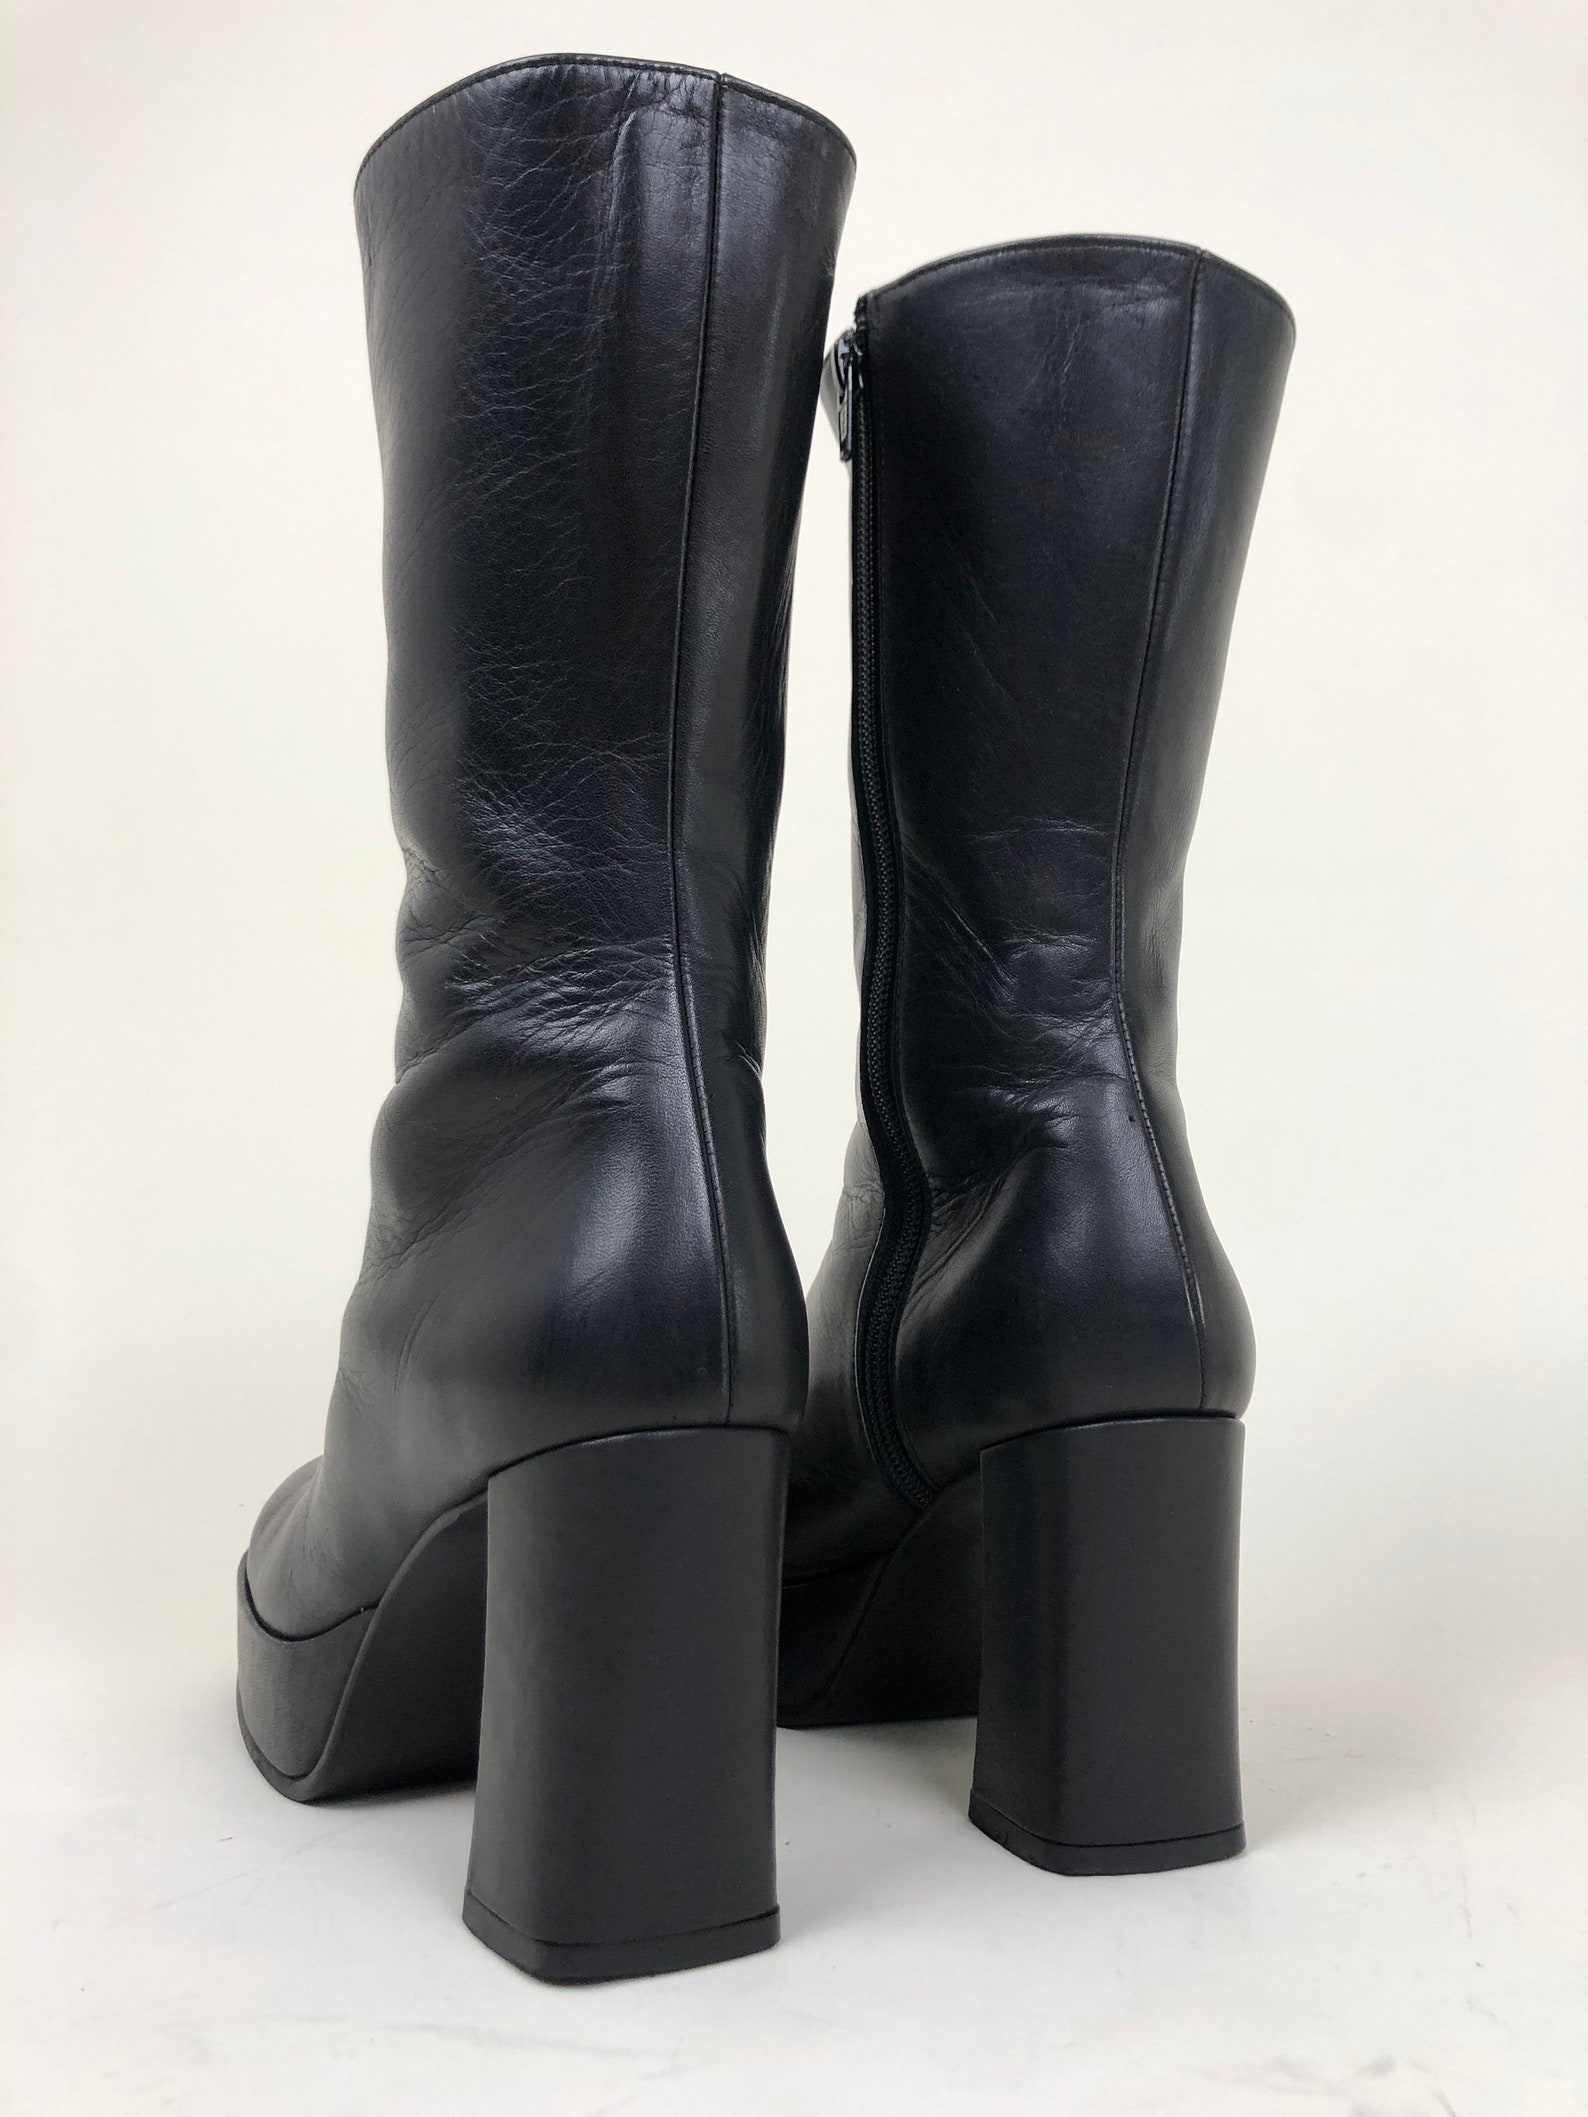 Vintage 90s black leather platform boots / square toe / grunge | Etsy